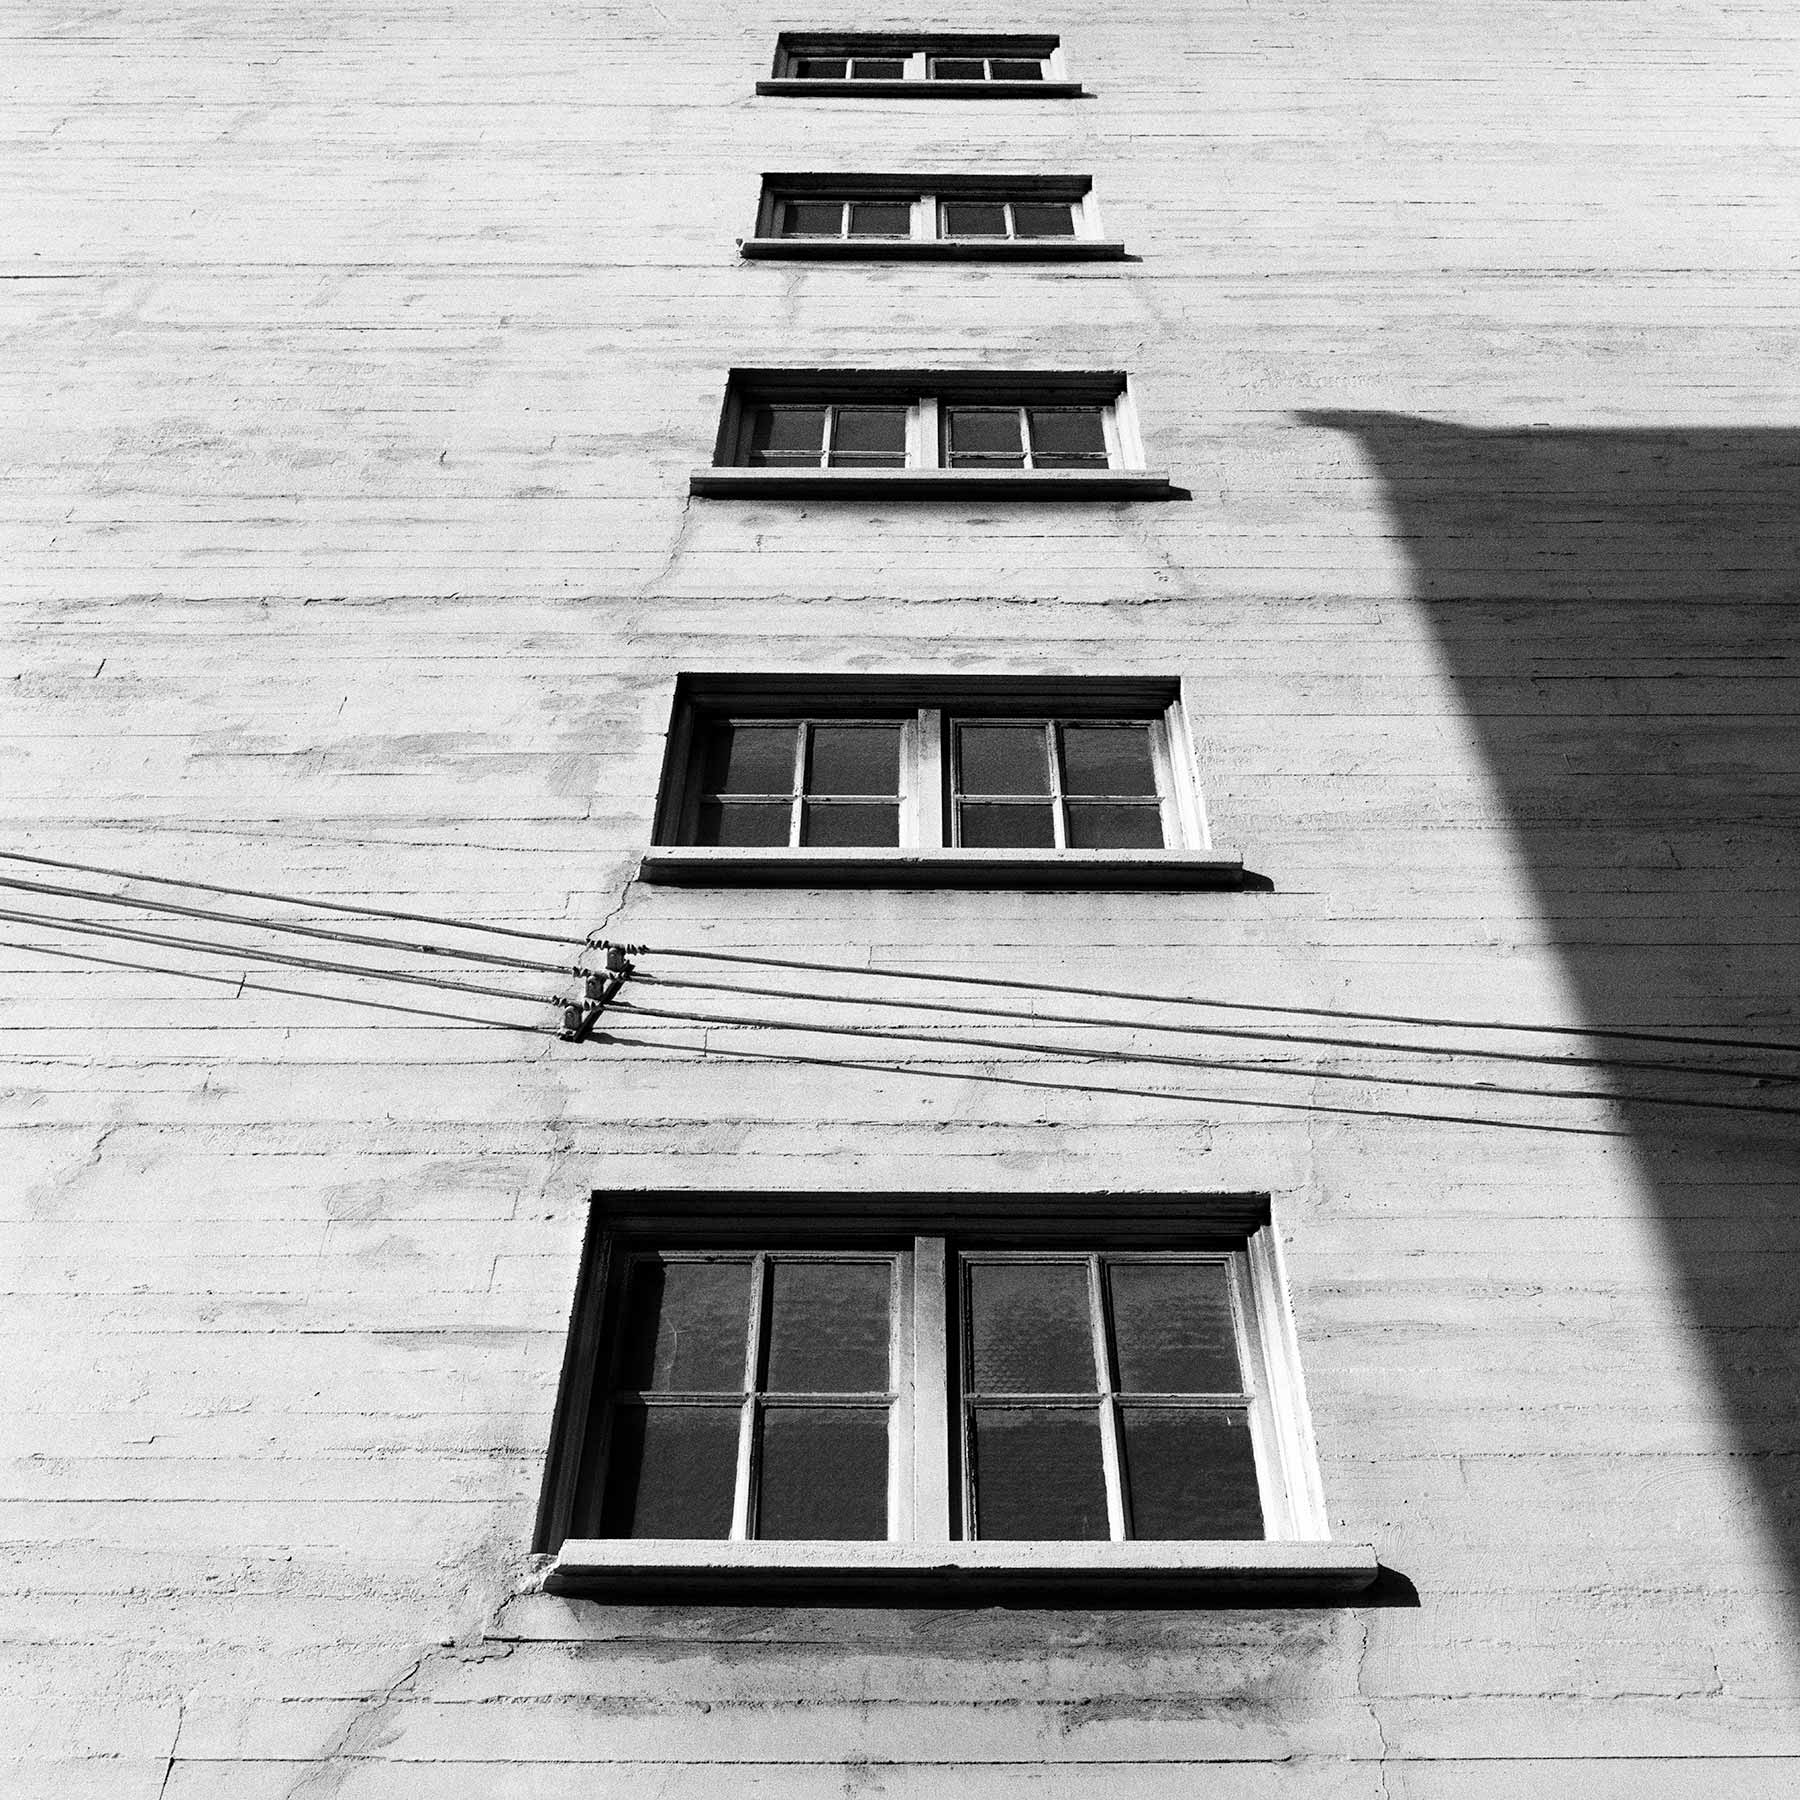 Fenêtres et lignes électriques – Arts District, Los Angeles, California, 1983